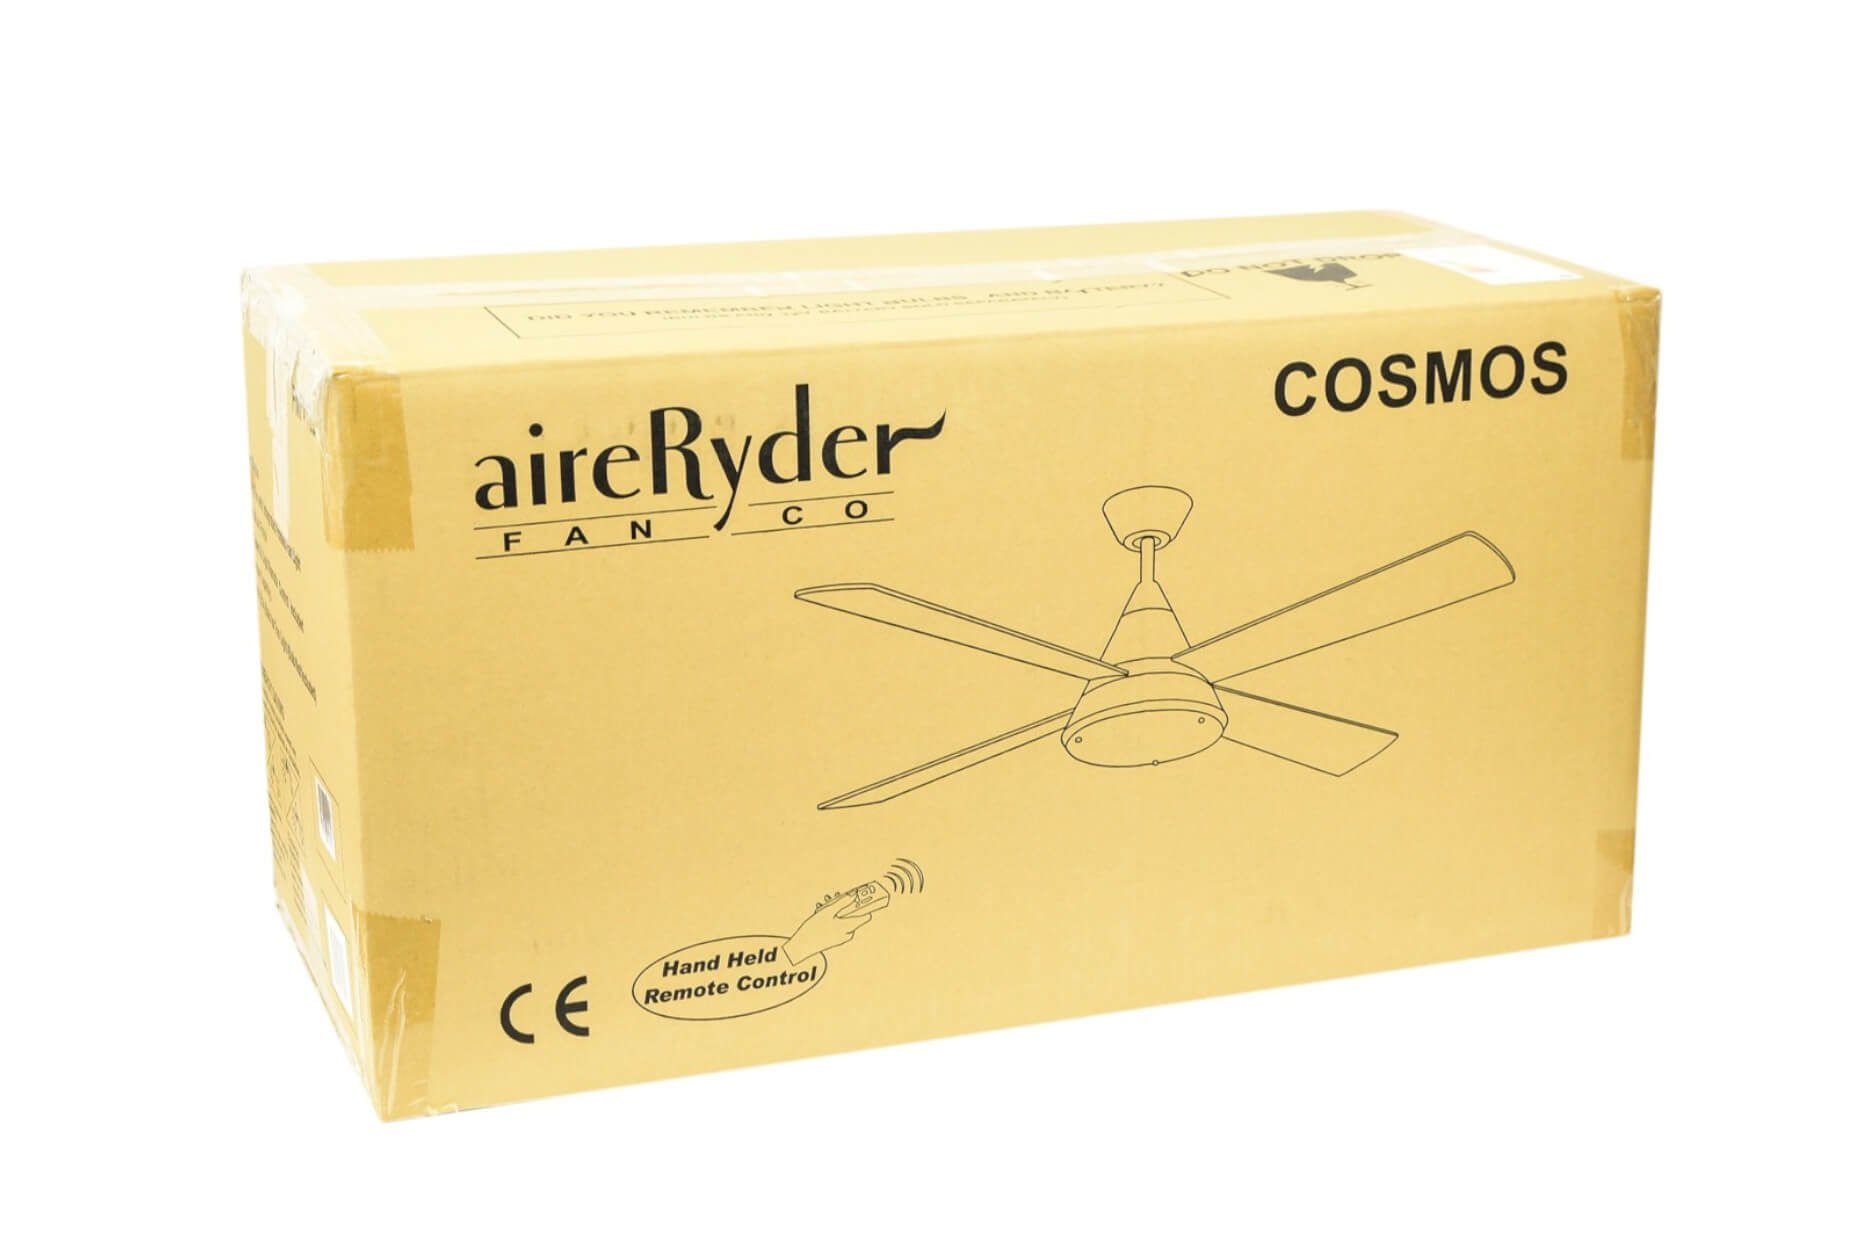 Deckenventilator Fernbedienung mit AireRyder Cosmos,